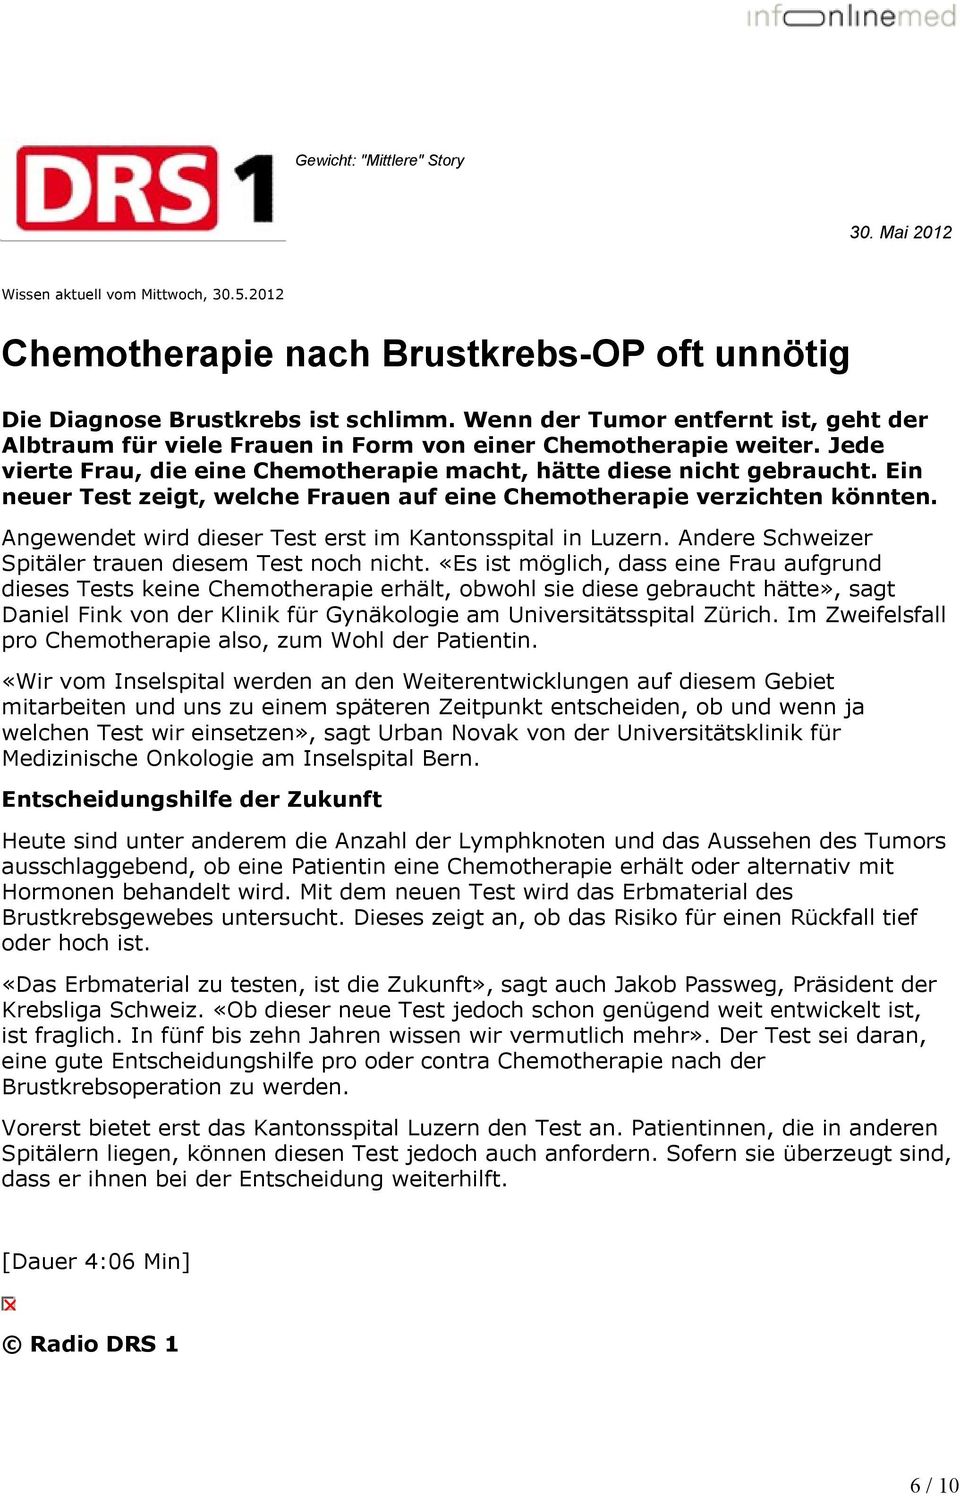 Ein neuer Test zeigt, welche Frauen auf eine Chemotherapie verzichten könnten. Angewendet wird dieser Test erst im Kantonsspital in Luzern. Andere Schweizer Spitäler trauen diesem Test noch nicht.